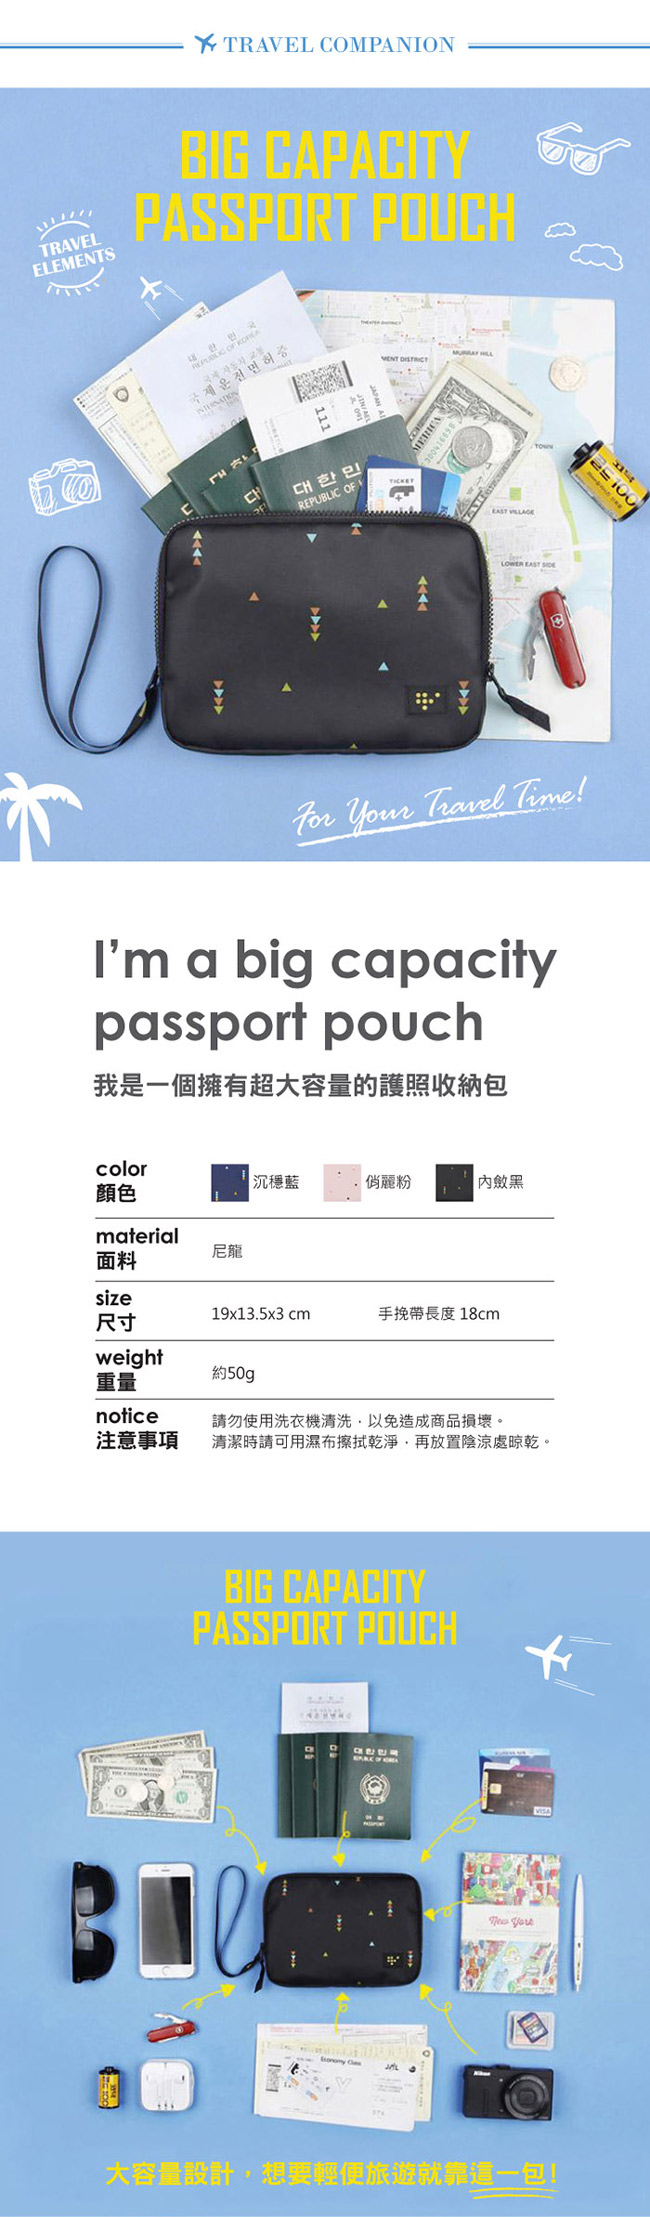 JIDA 時尚清新大容量可手挽證件護照收納包(3色)